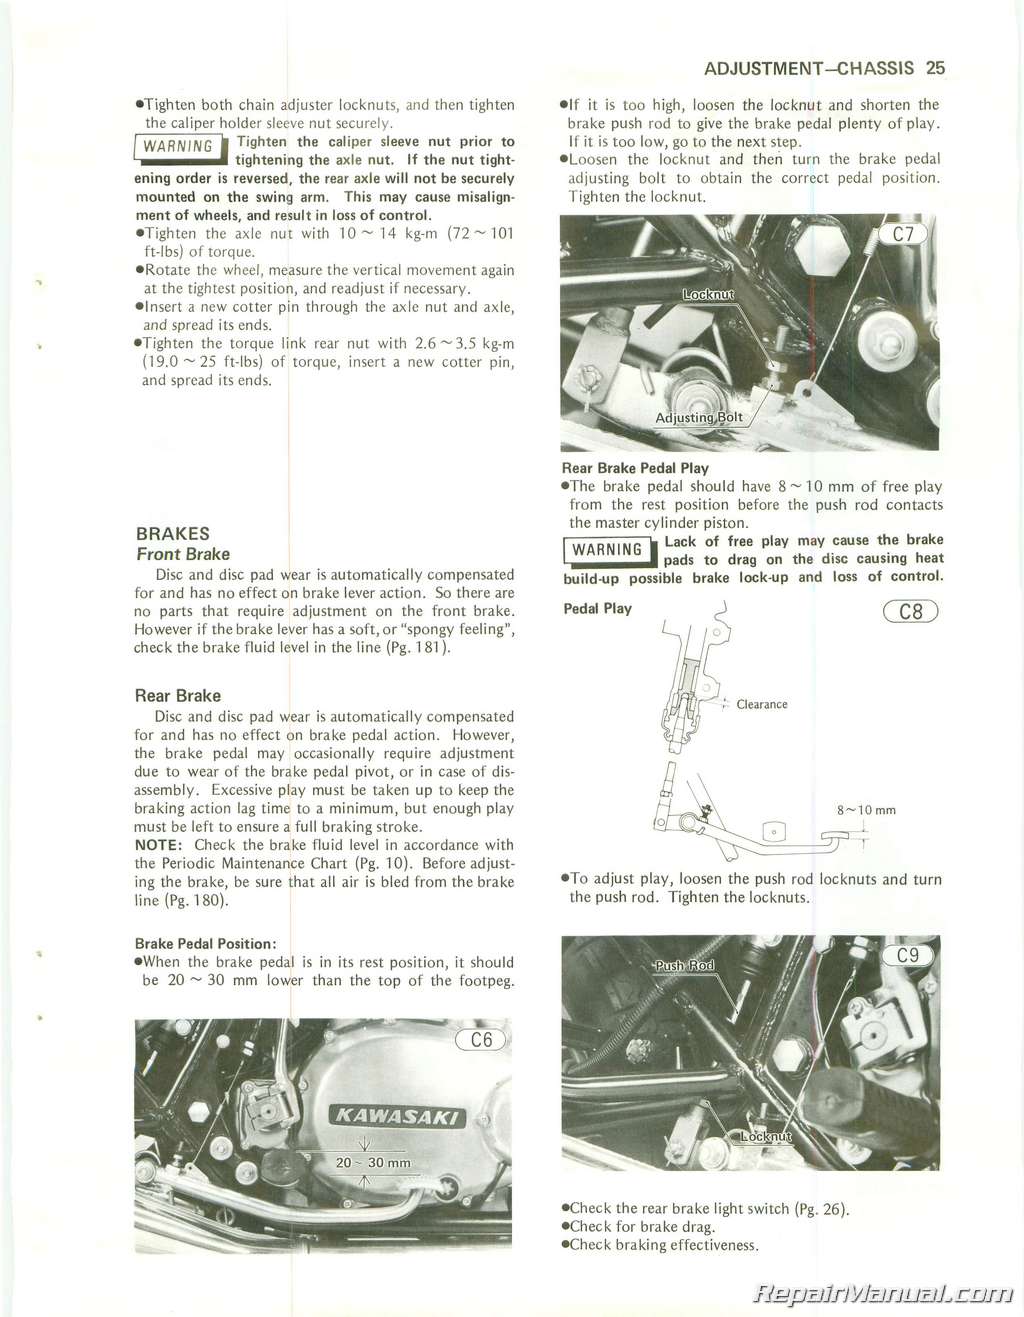 1982 Kawasaki Kz750 Manual